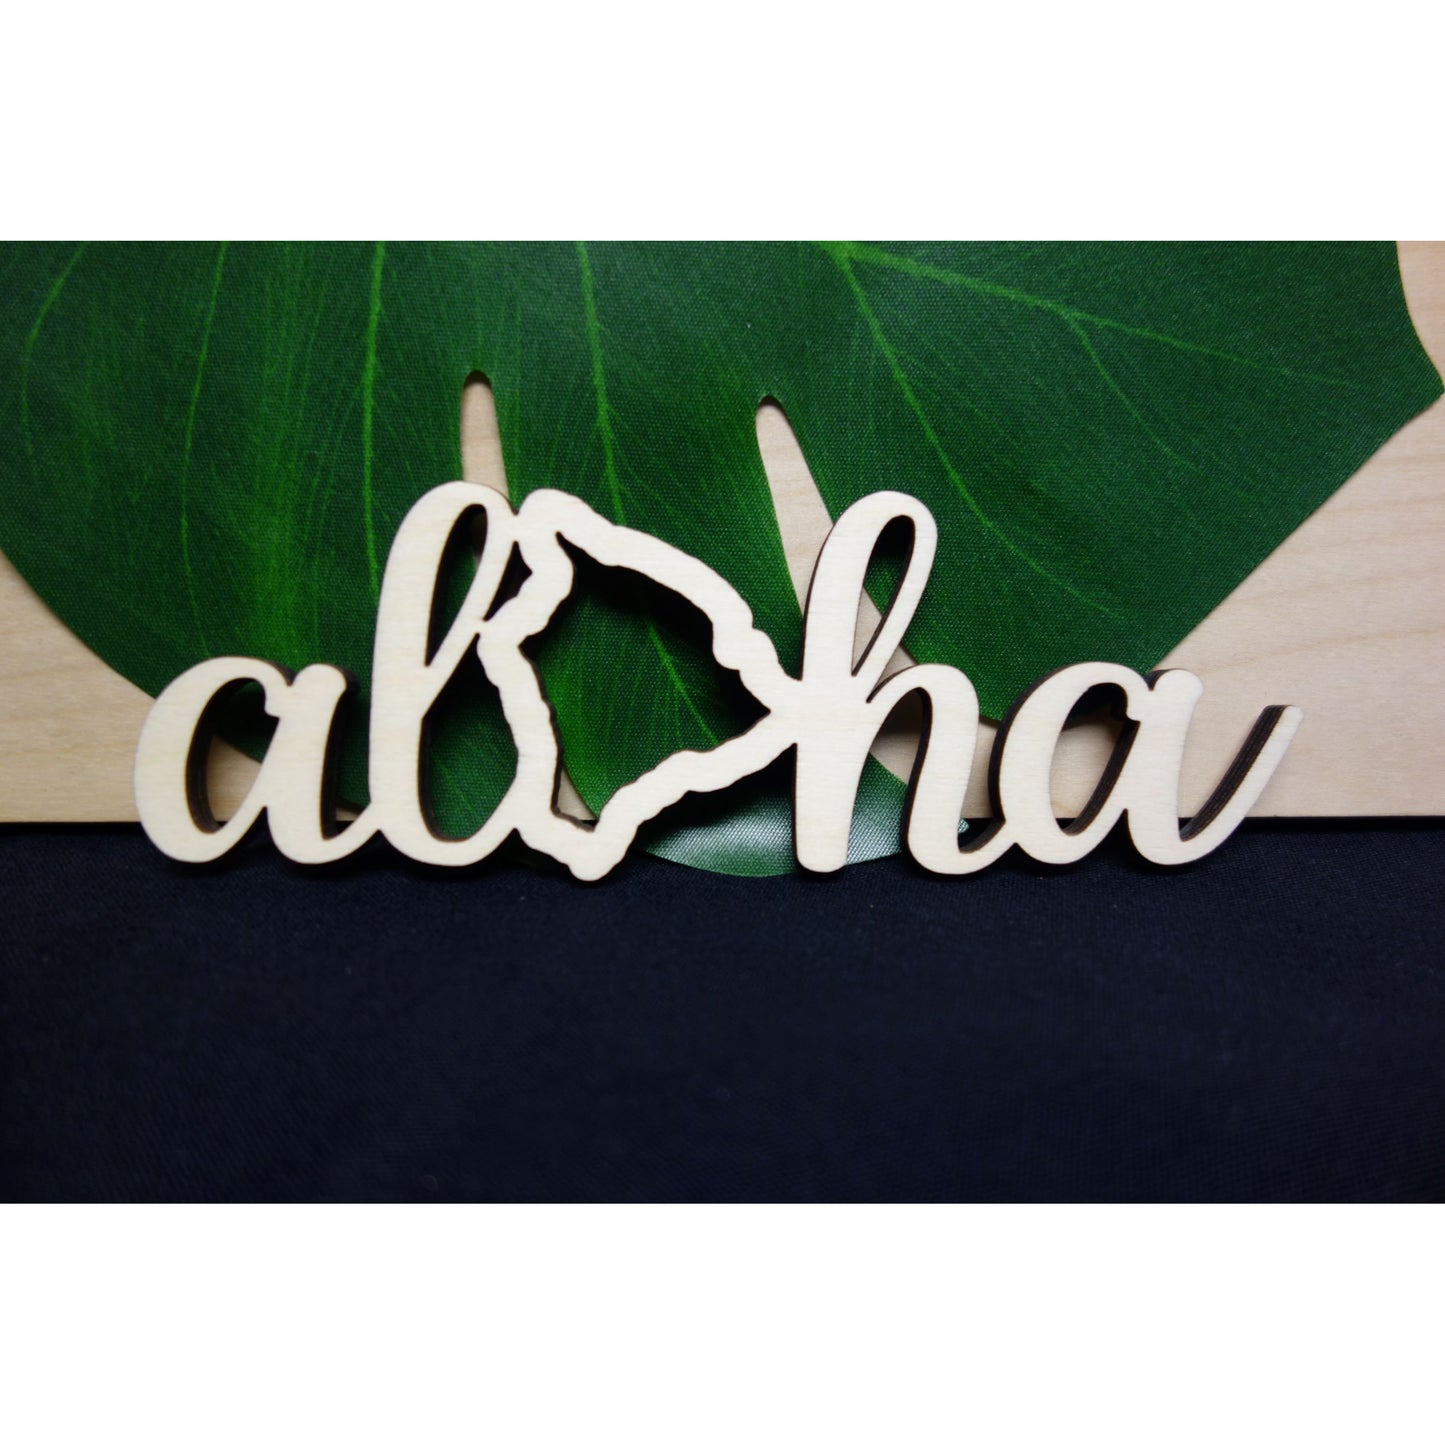 Aloha Big Island Decorative Piece